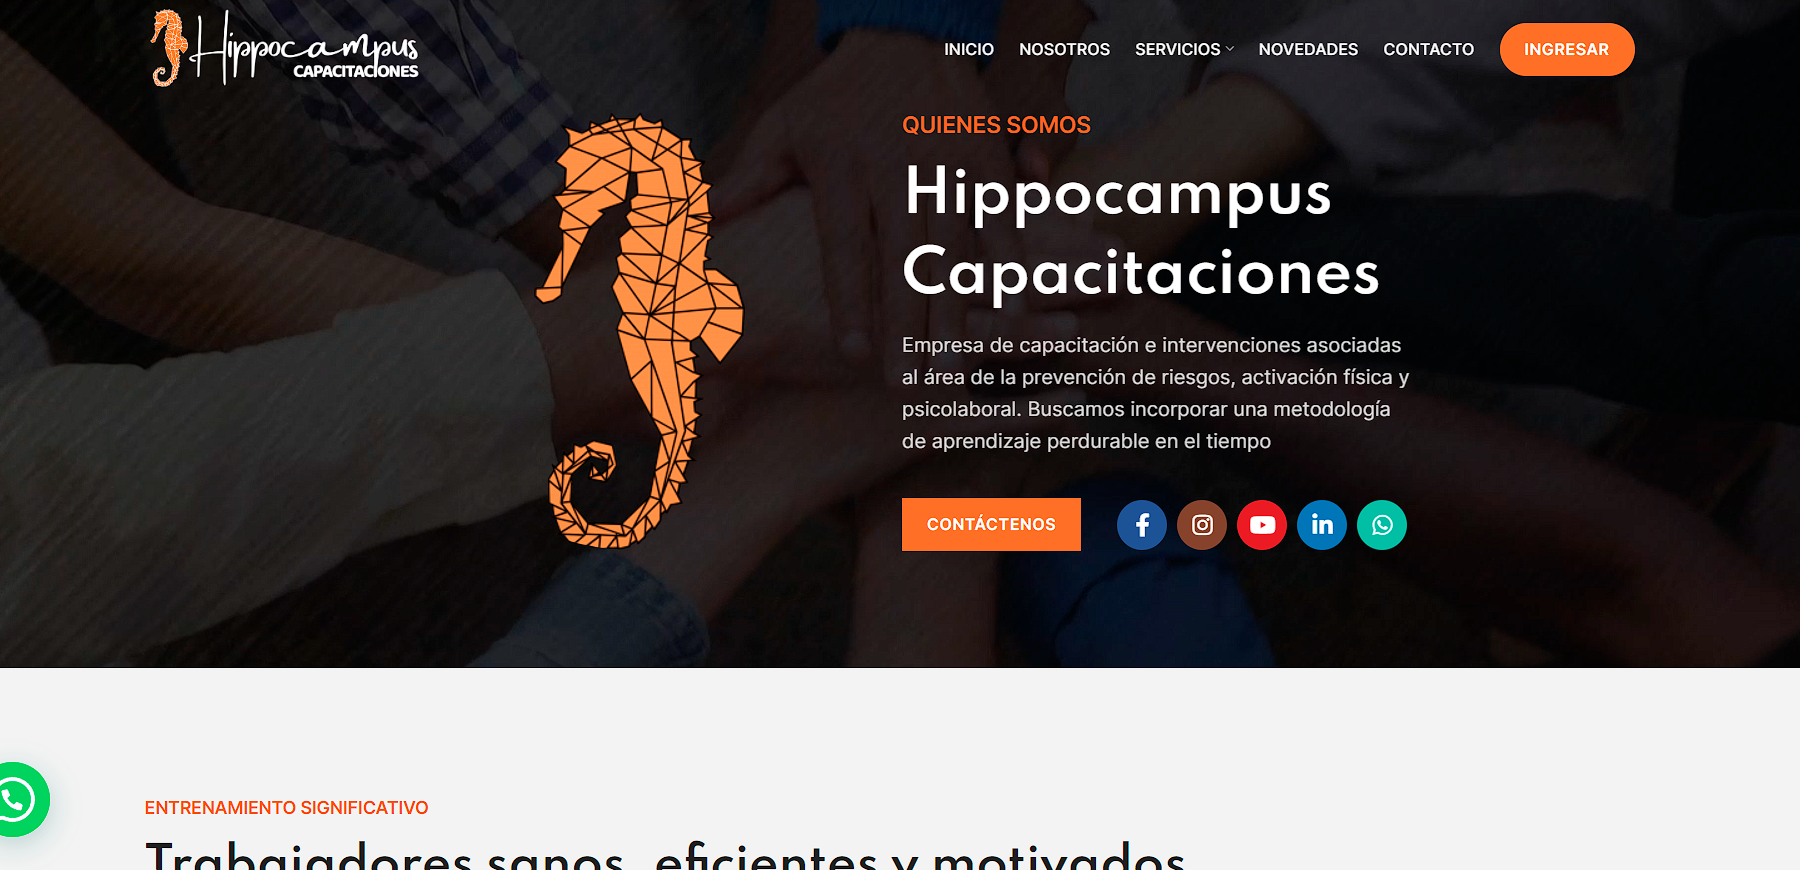 Hippocampus capacitaciones